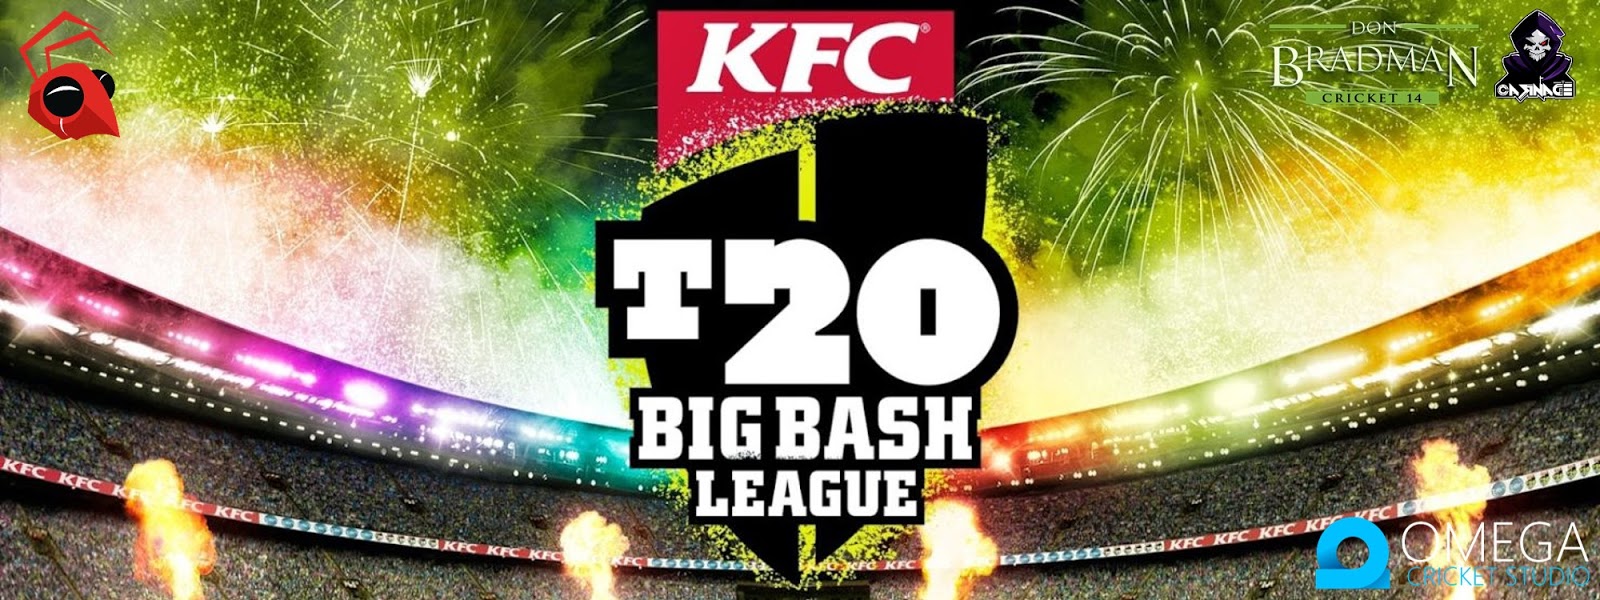 Big Bash League T20 2019-20 Patch for Don Bradman Cricket 14